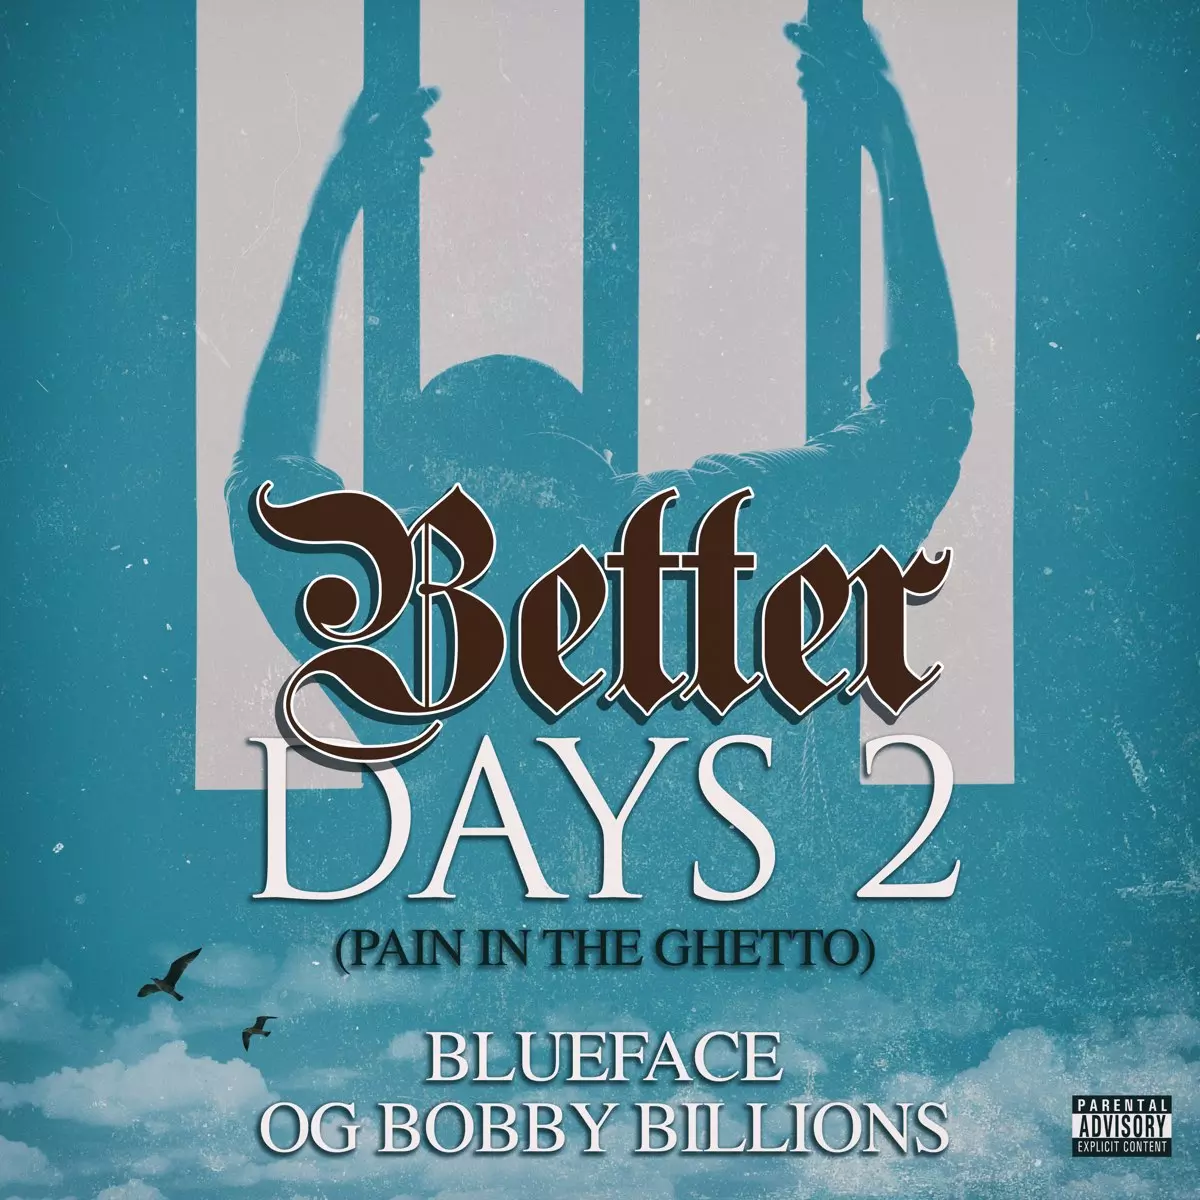 Blueface ft. OG Bobby Billions - Better Days 2 (Pain in The Ghetto)